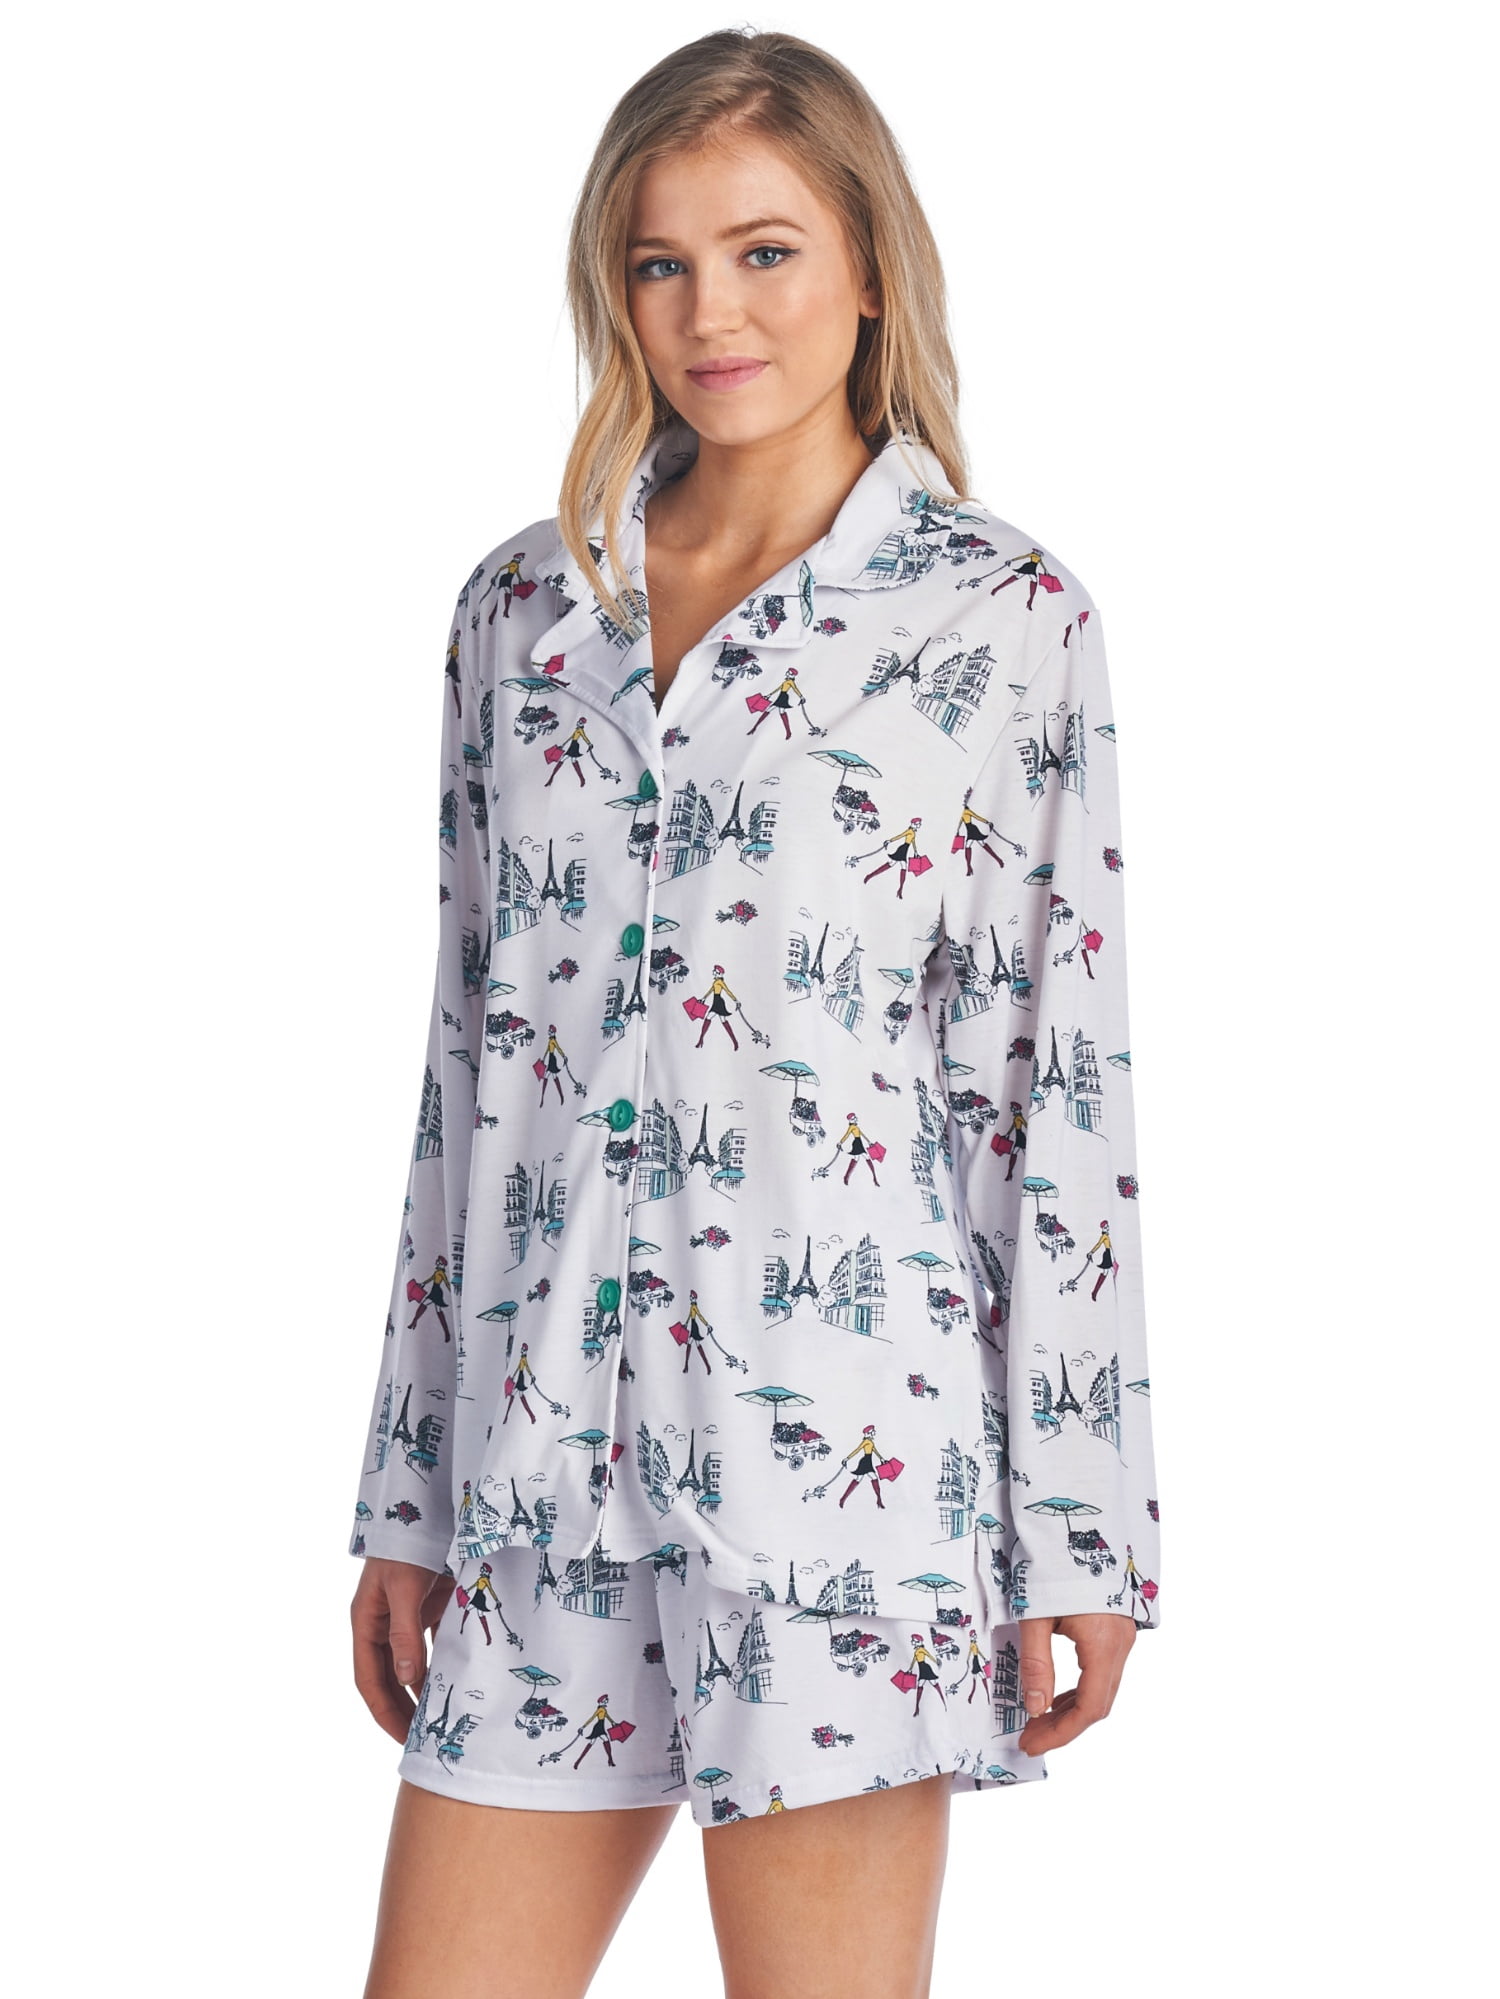 BedHead Pajamas - BHPJ By Bedhead Pajamas Women's Long Sleeve Pajama ...